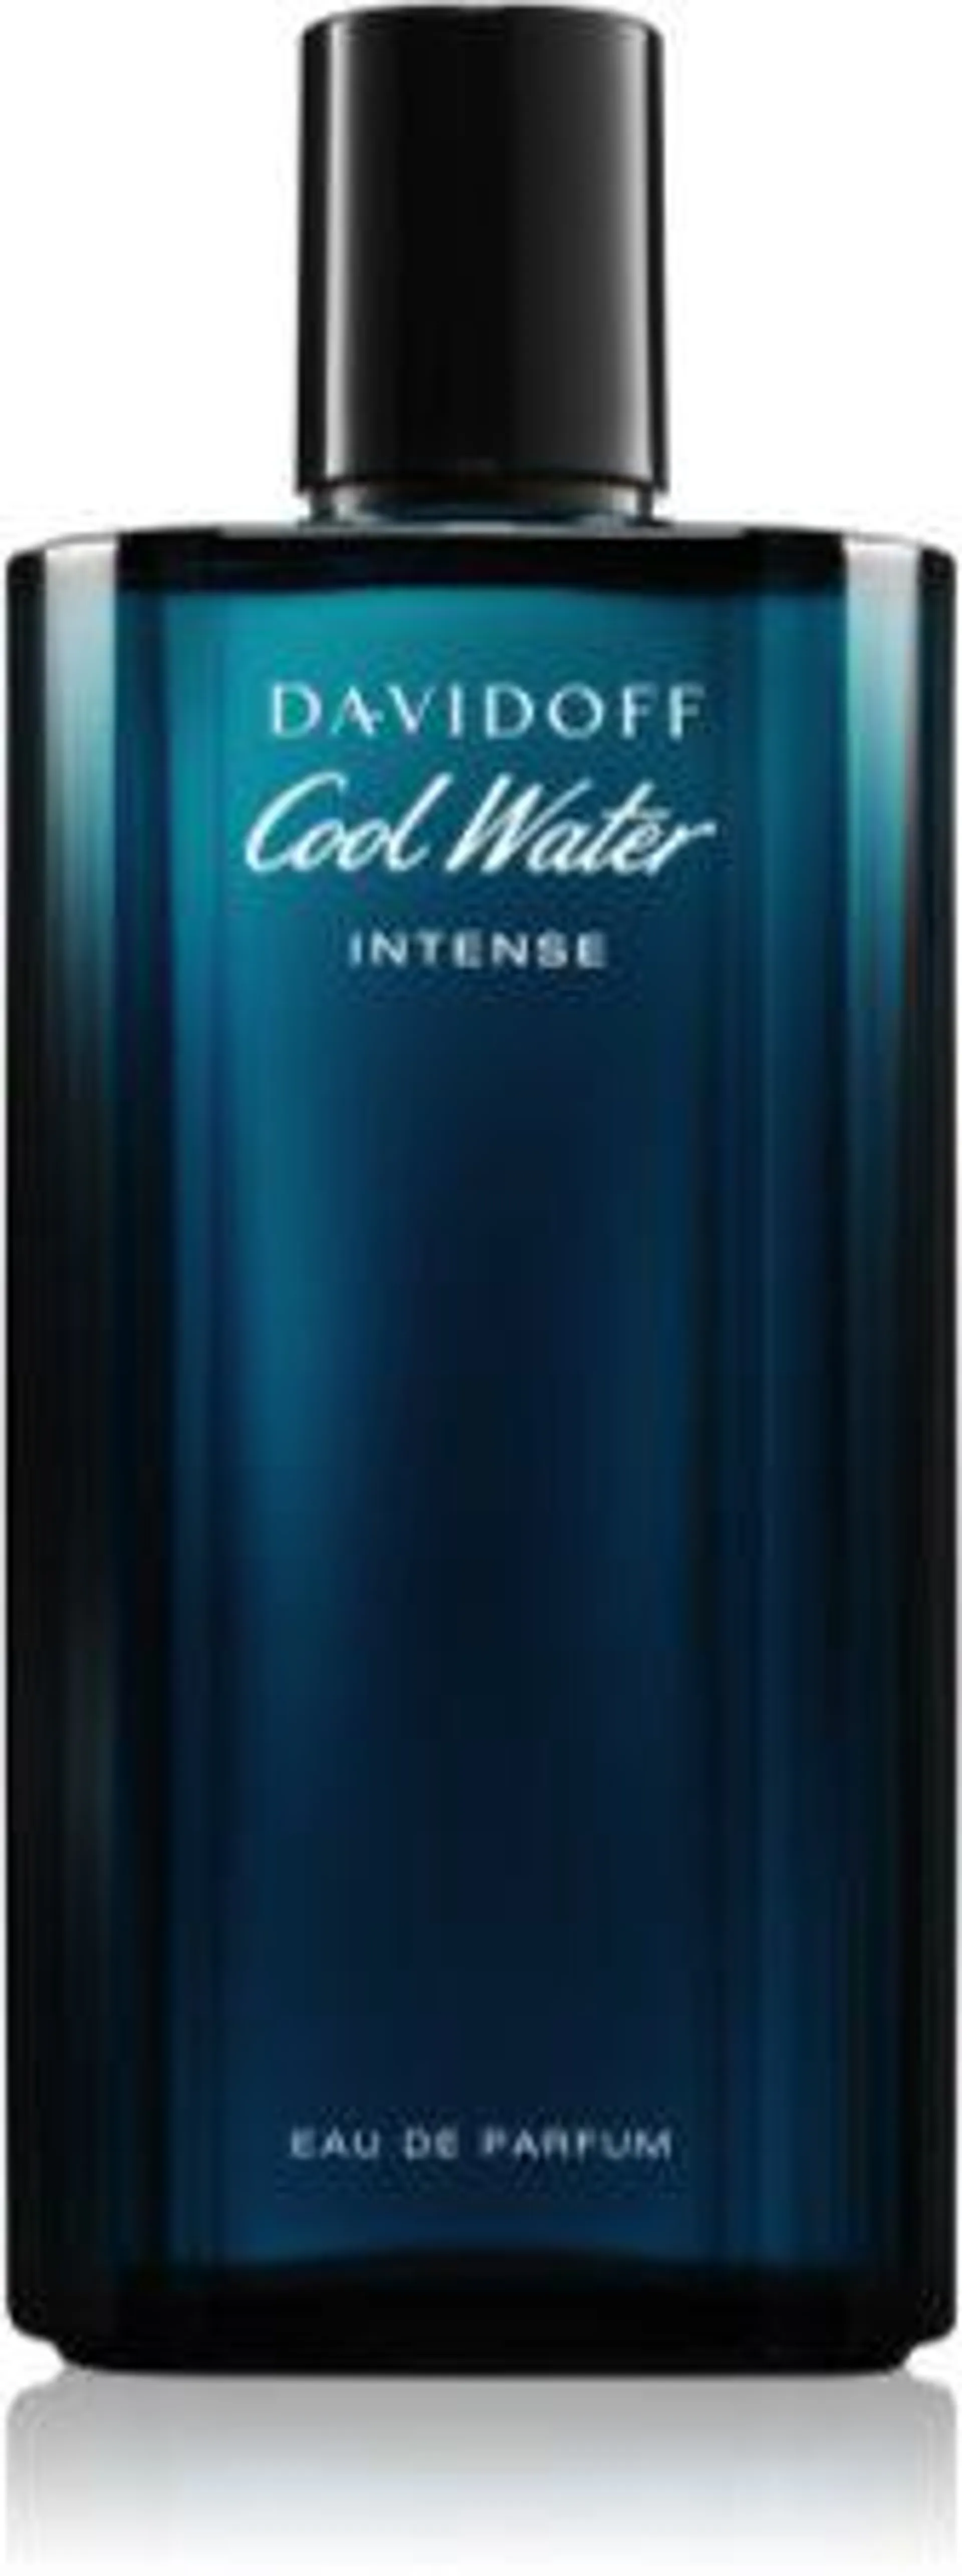 Cool Water Intense